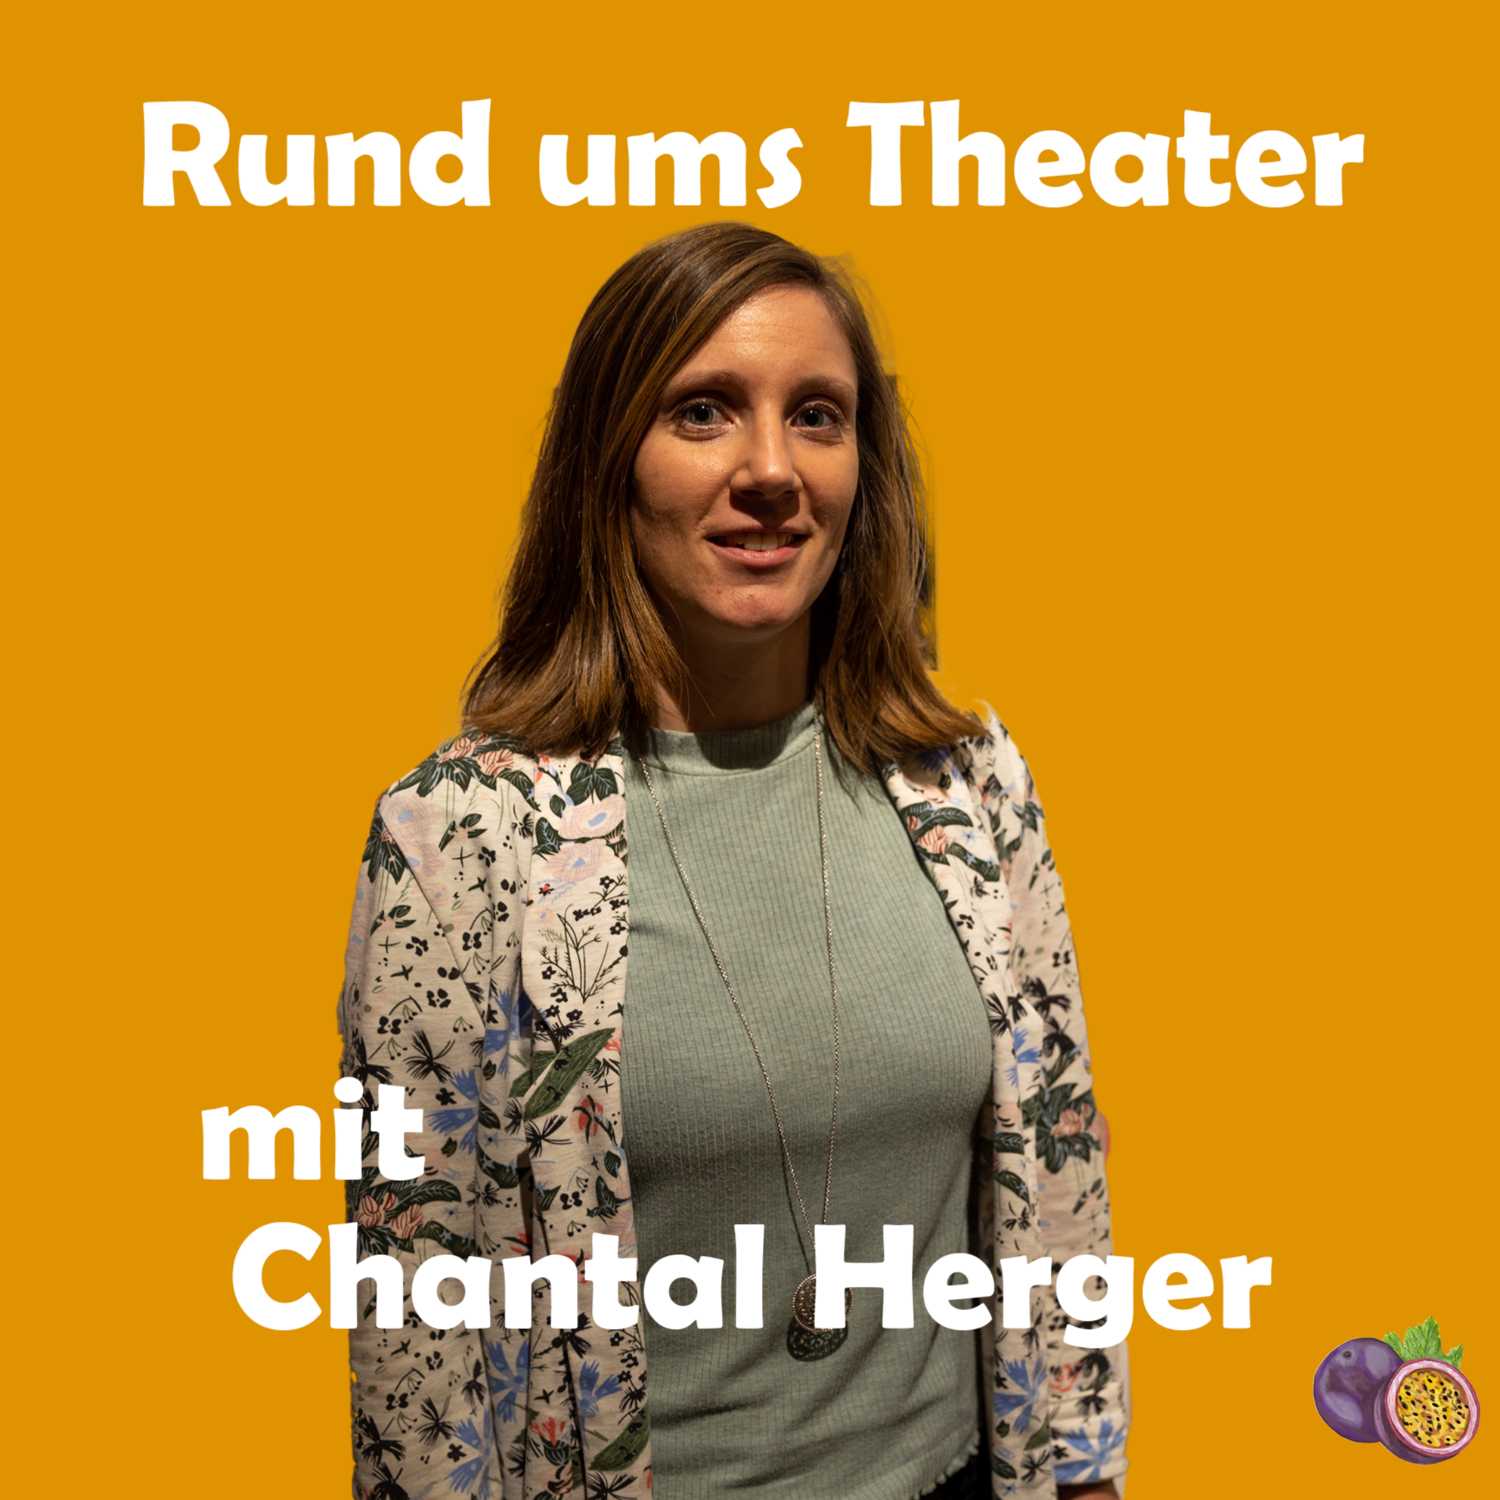 Rund ums Theater mit Chantal Herger